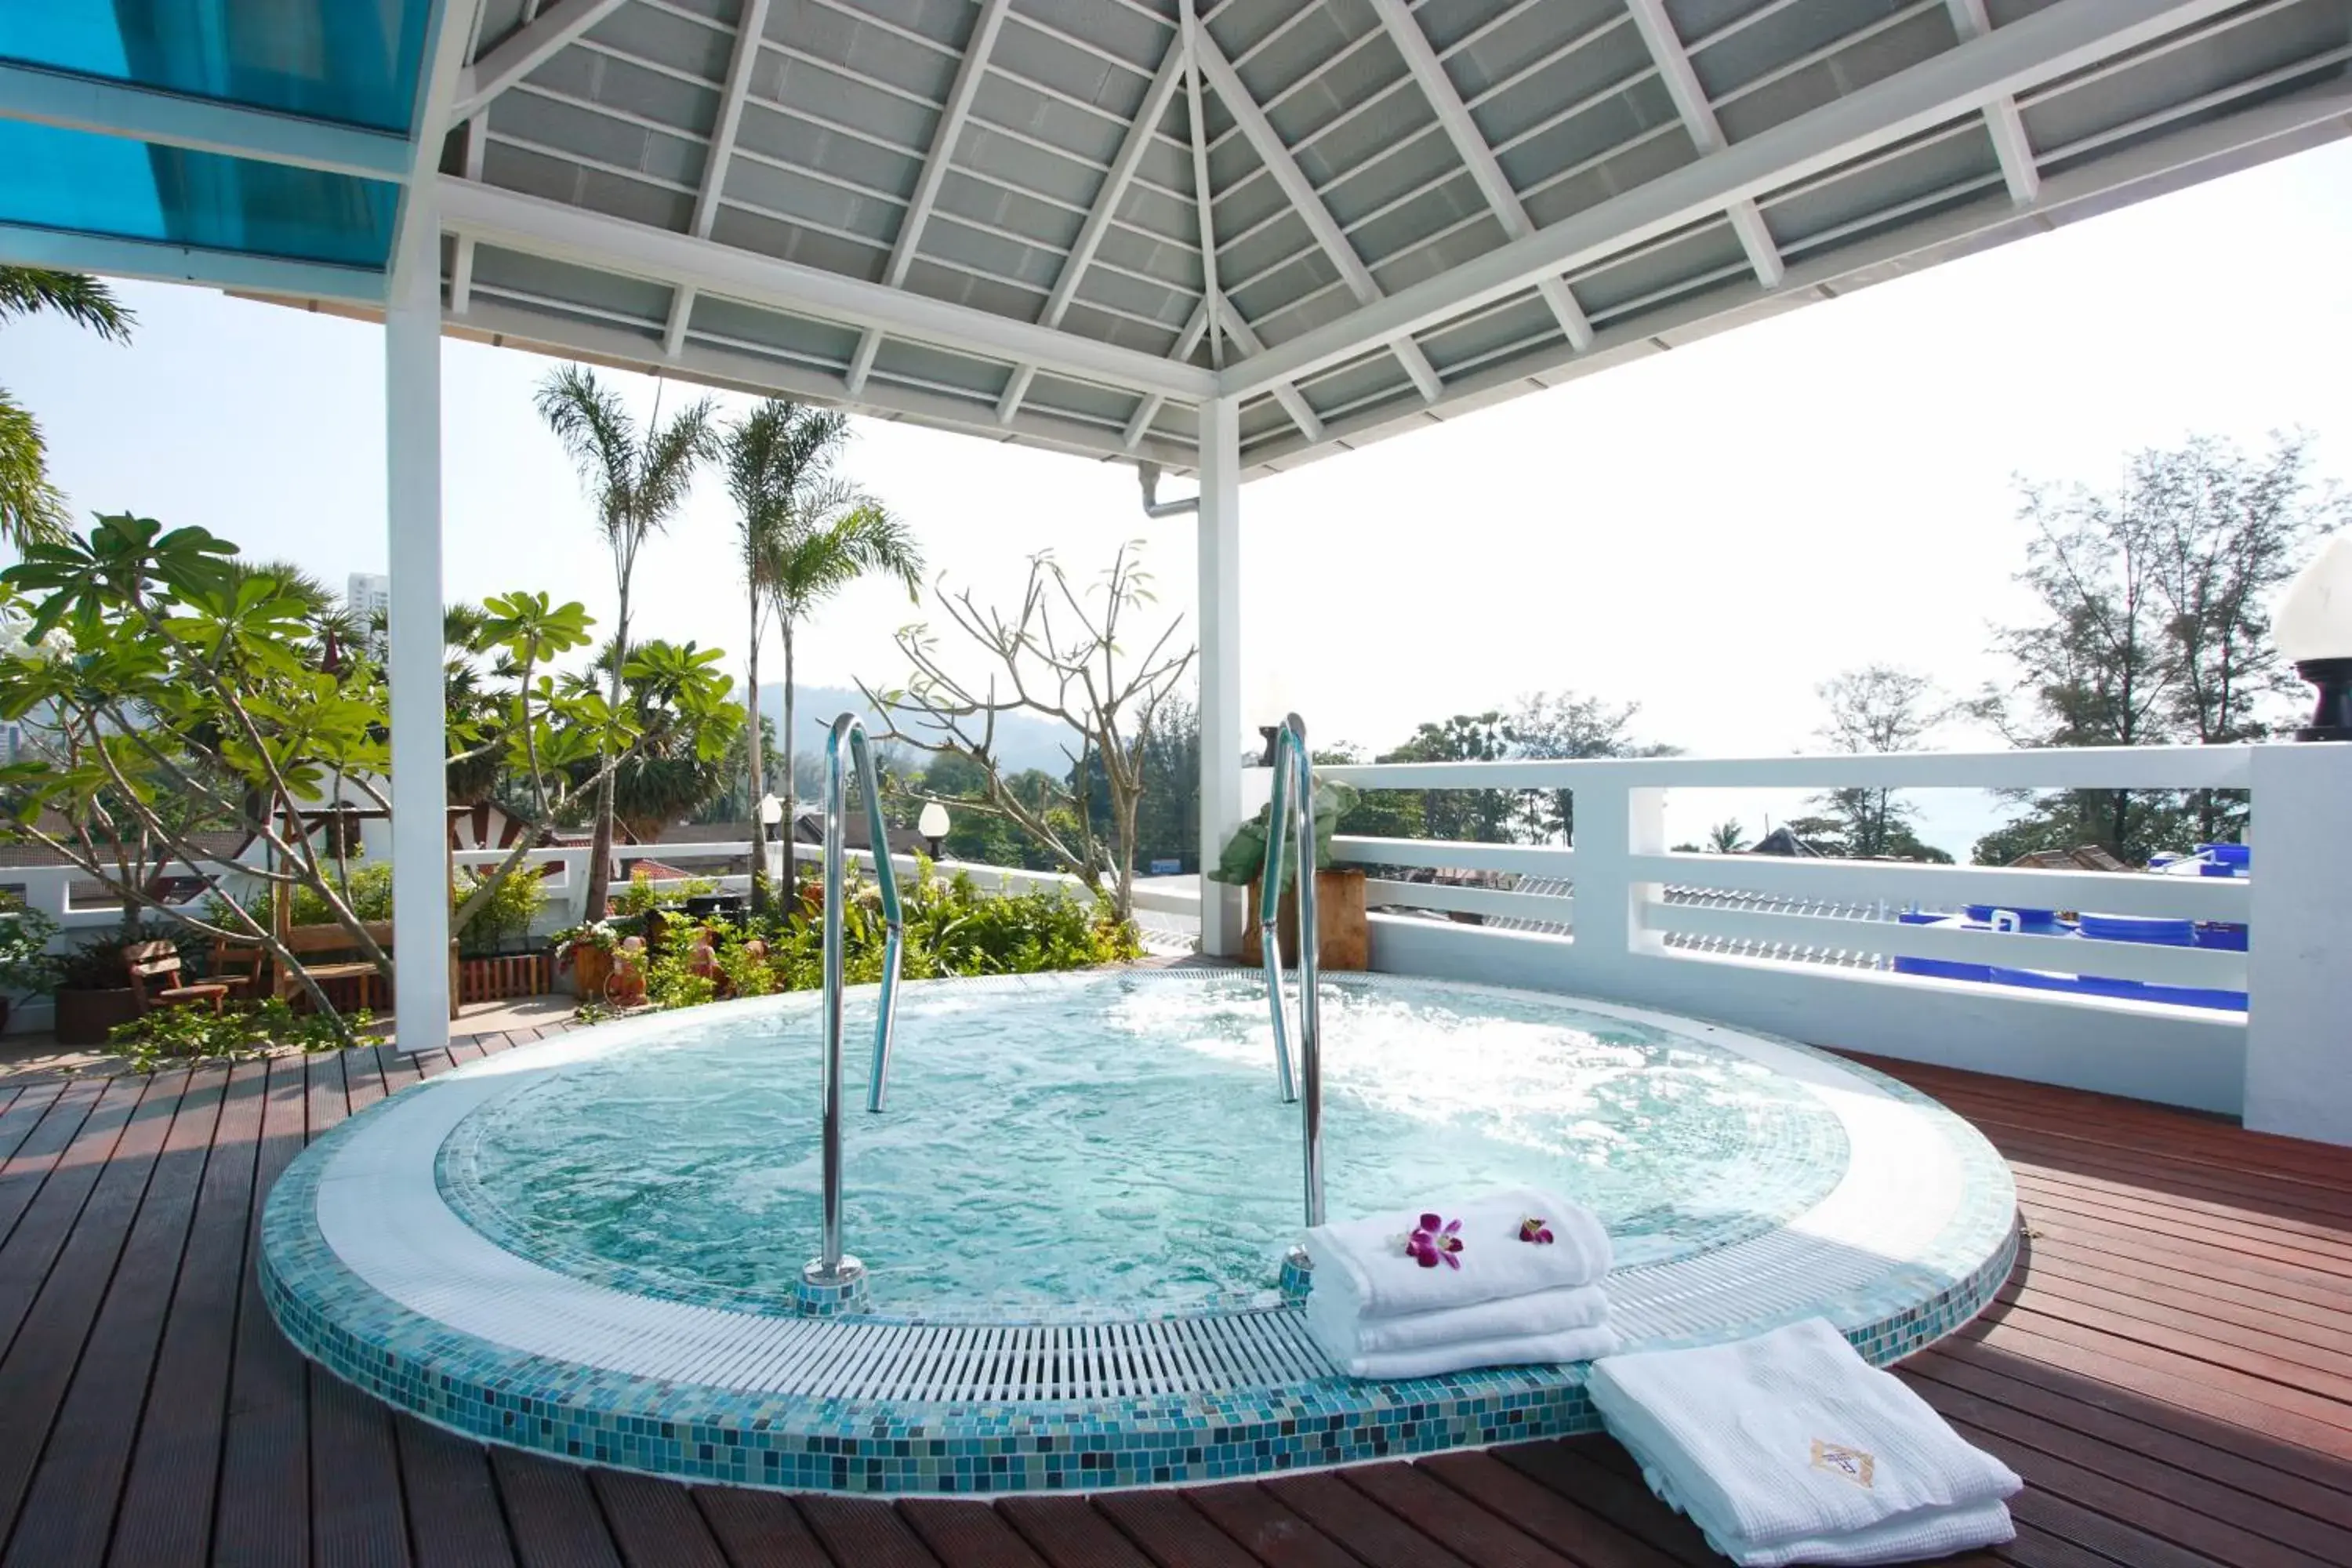 Area and facilities, Swimming Pool in Rayaburi Hotel, Patong